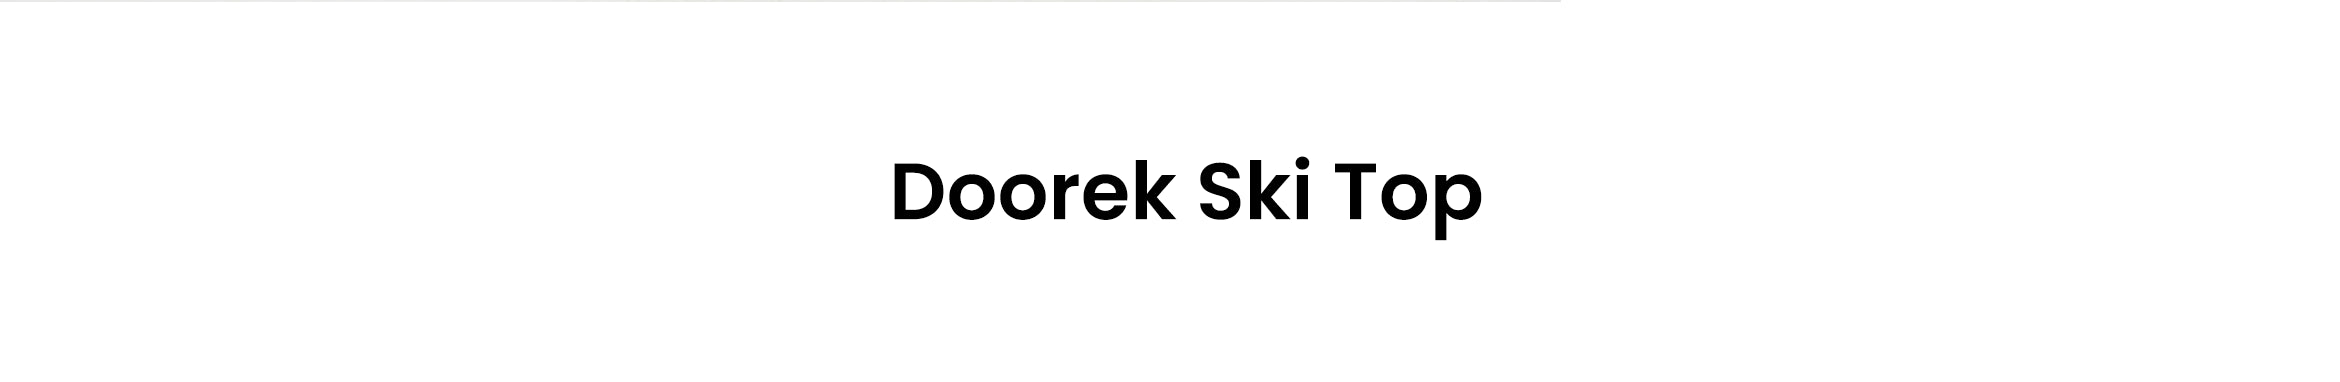 1. Doorek ski top